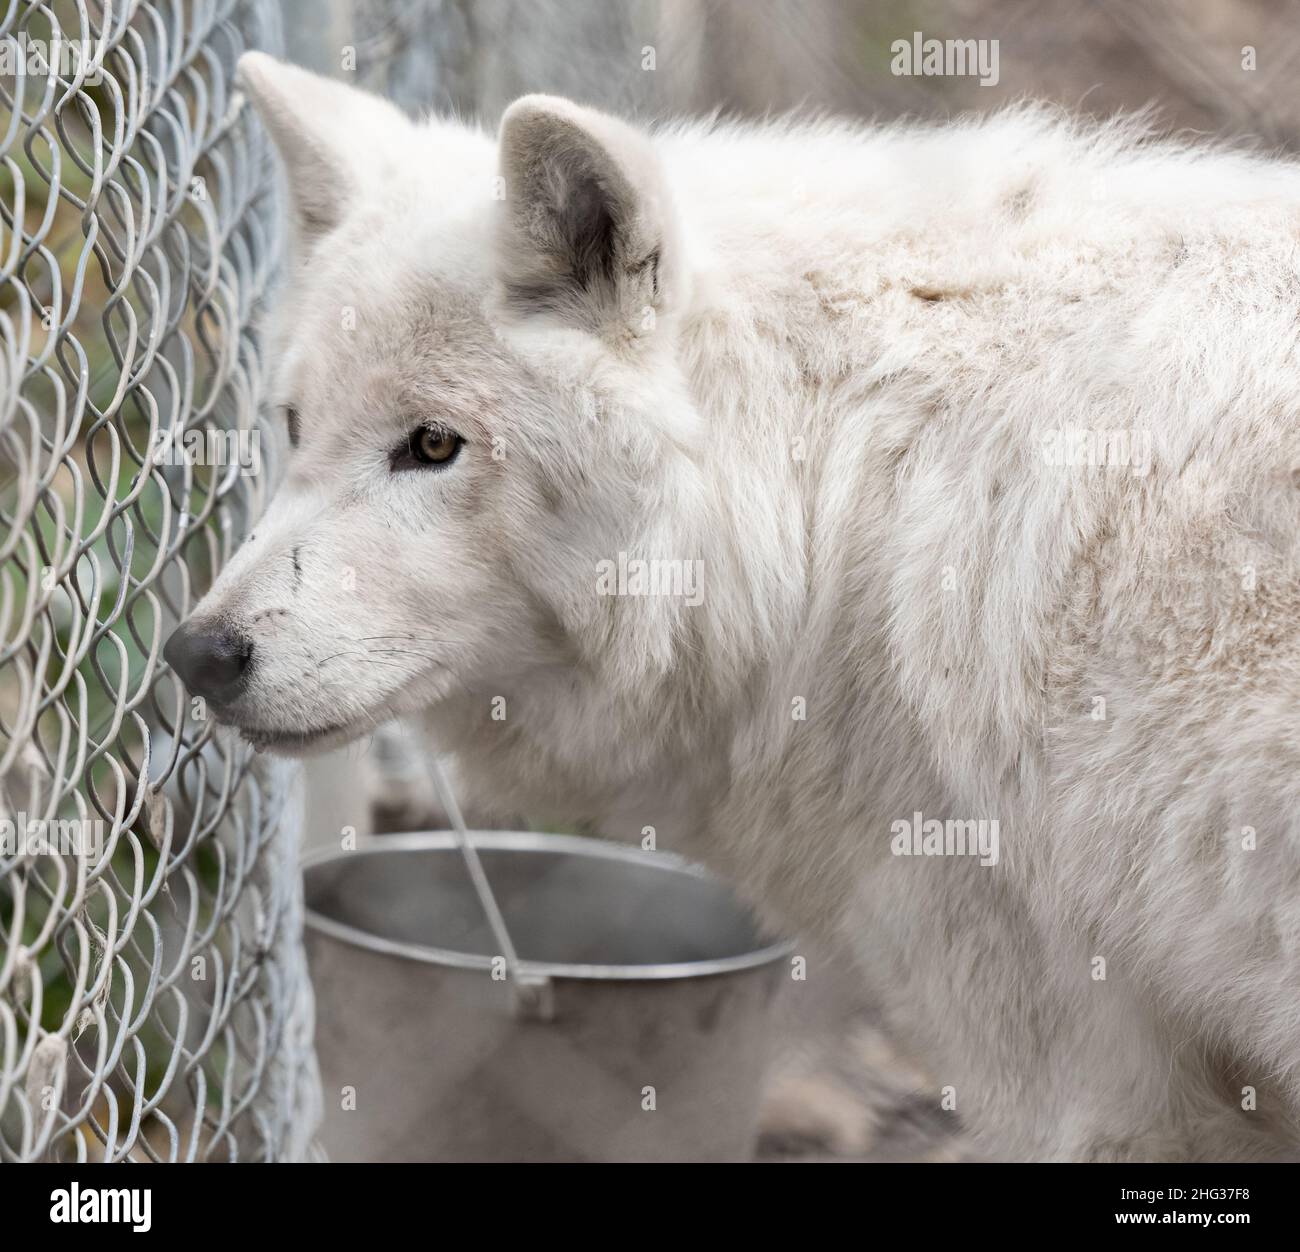 Arktische Wölfe - Canis lupus arctos - in Gefangenschaft. Nahaufnahme eines weißen arktischen Wolfes. Reisefoto, selektiver Fokus, keine Menschen Stockfoto